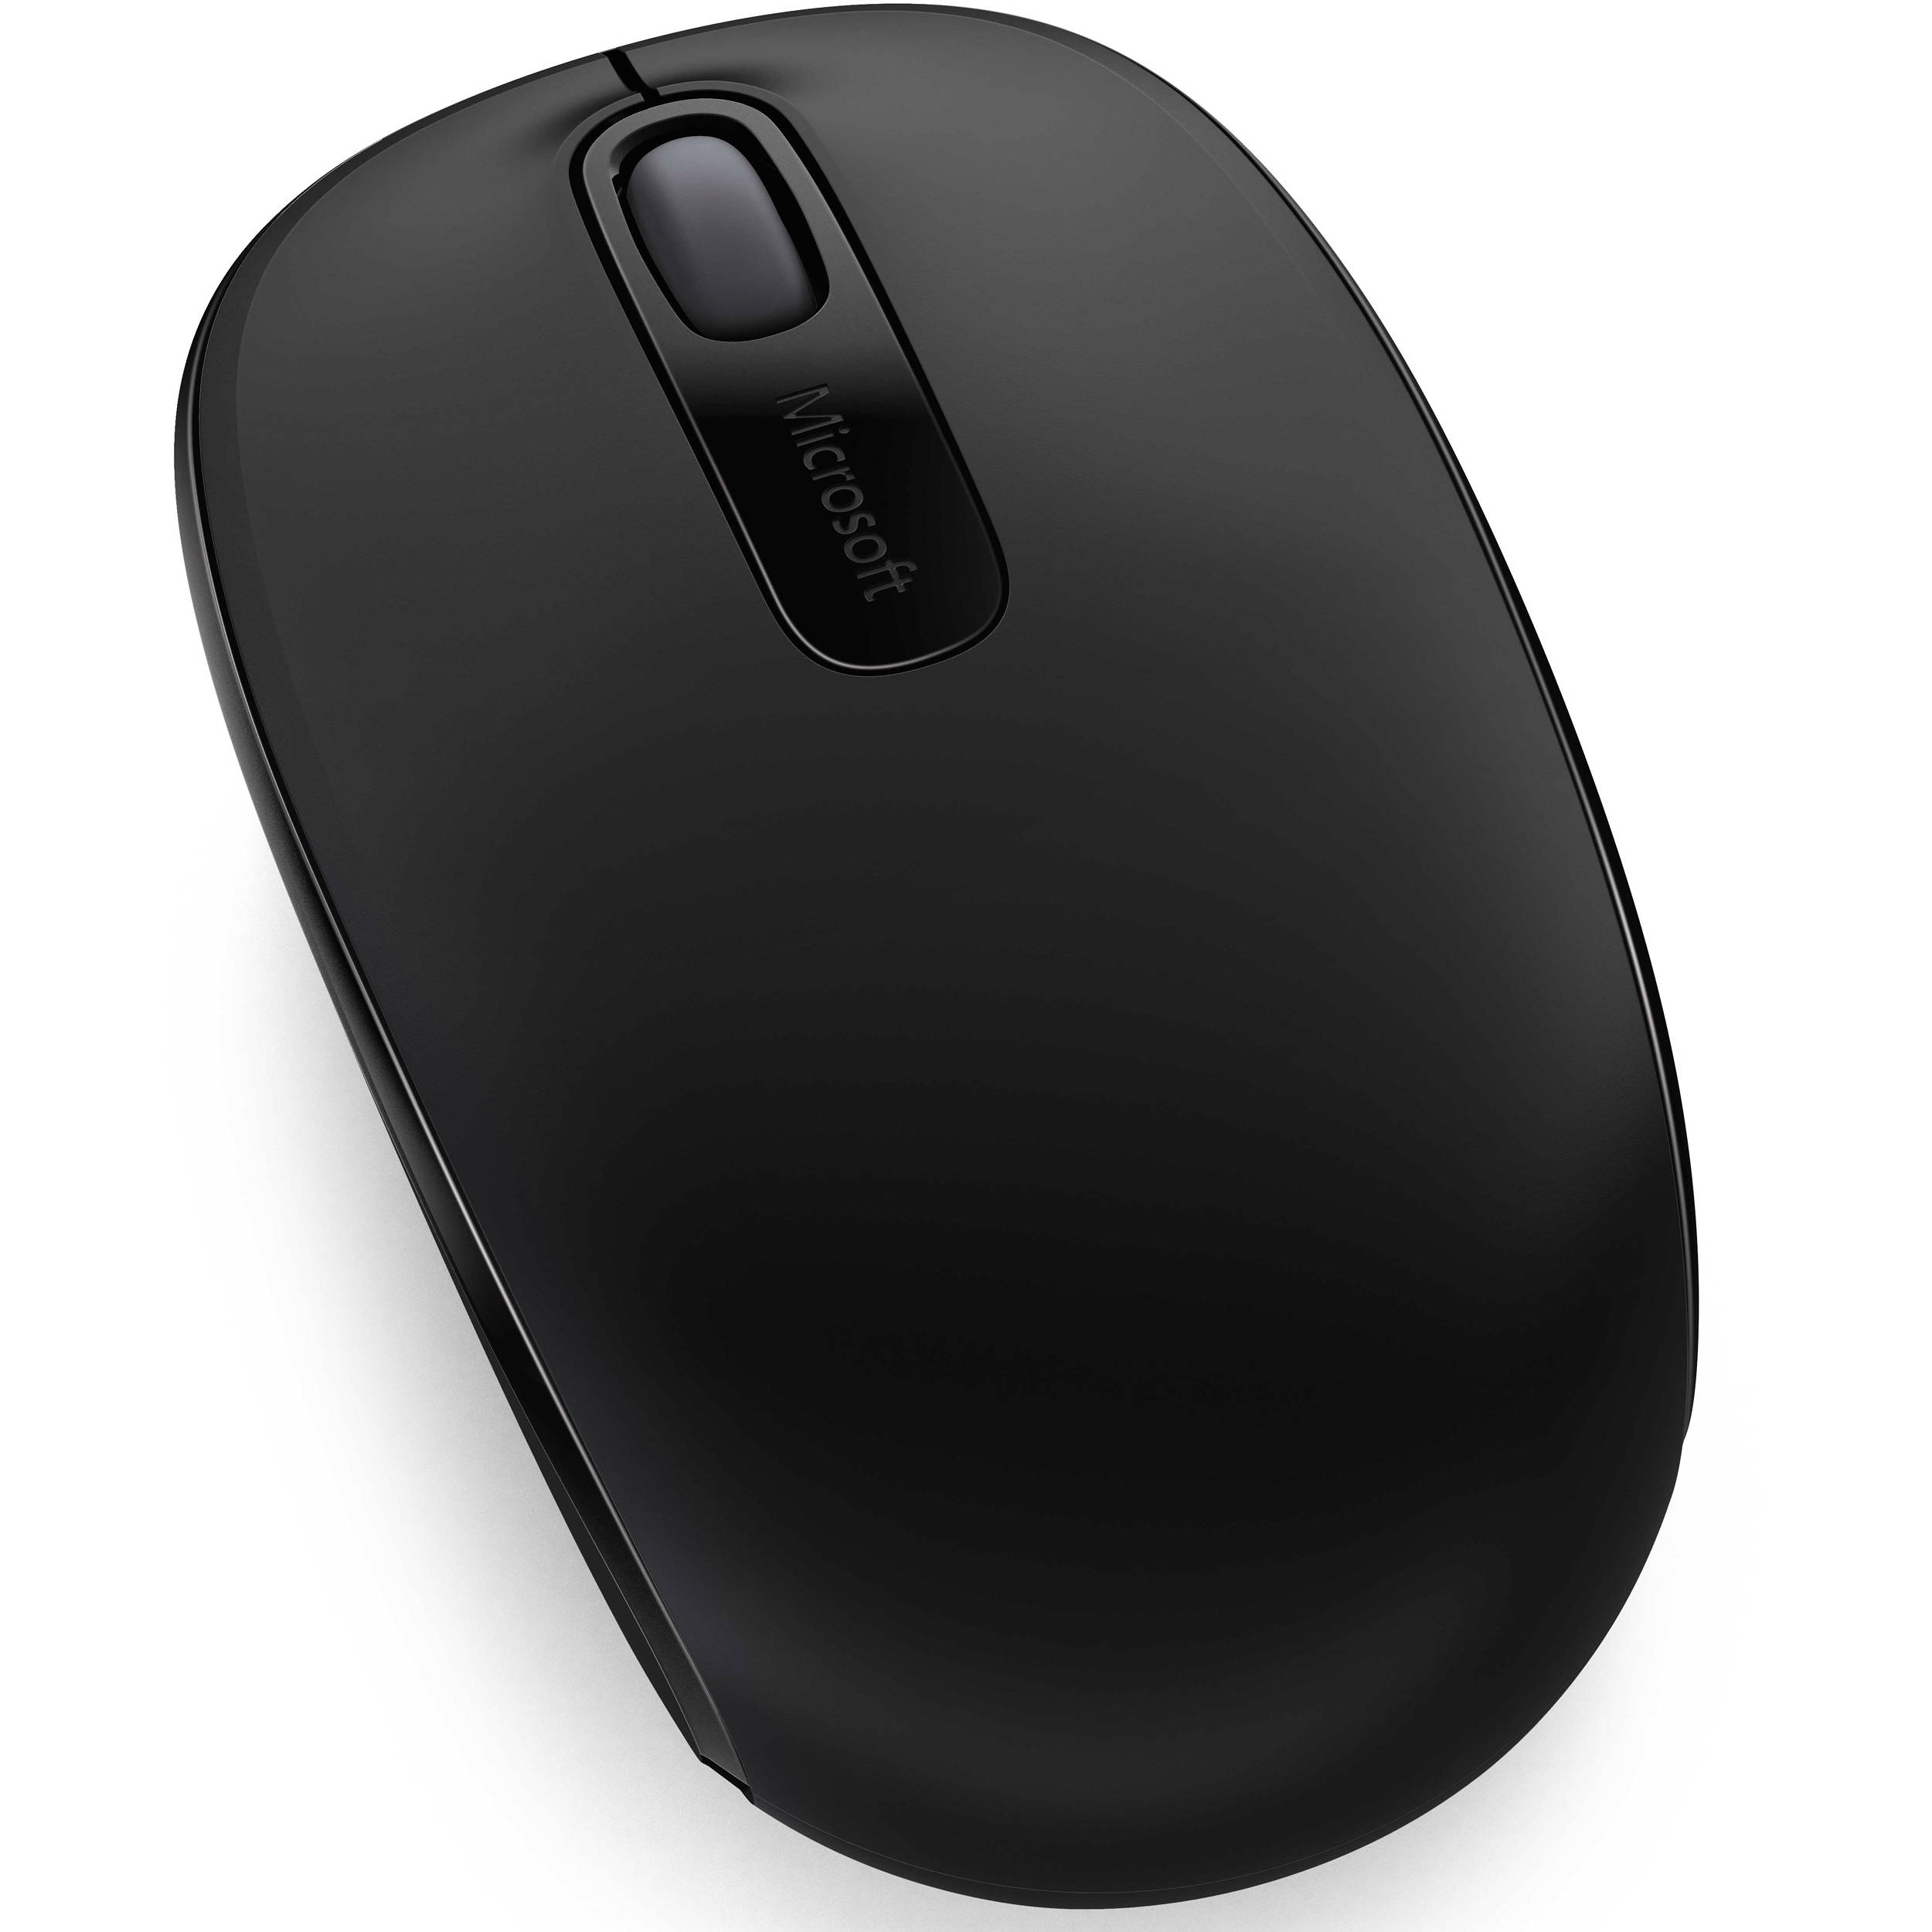 Microsoft Wireless Mobile Mouse 1850 | Help Tech Co. Ltd